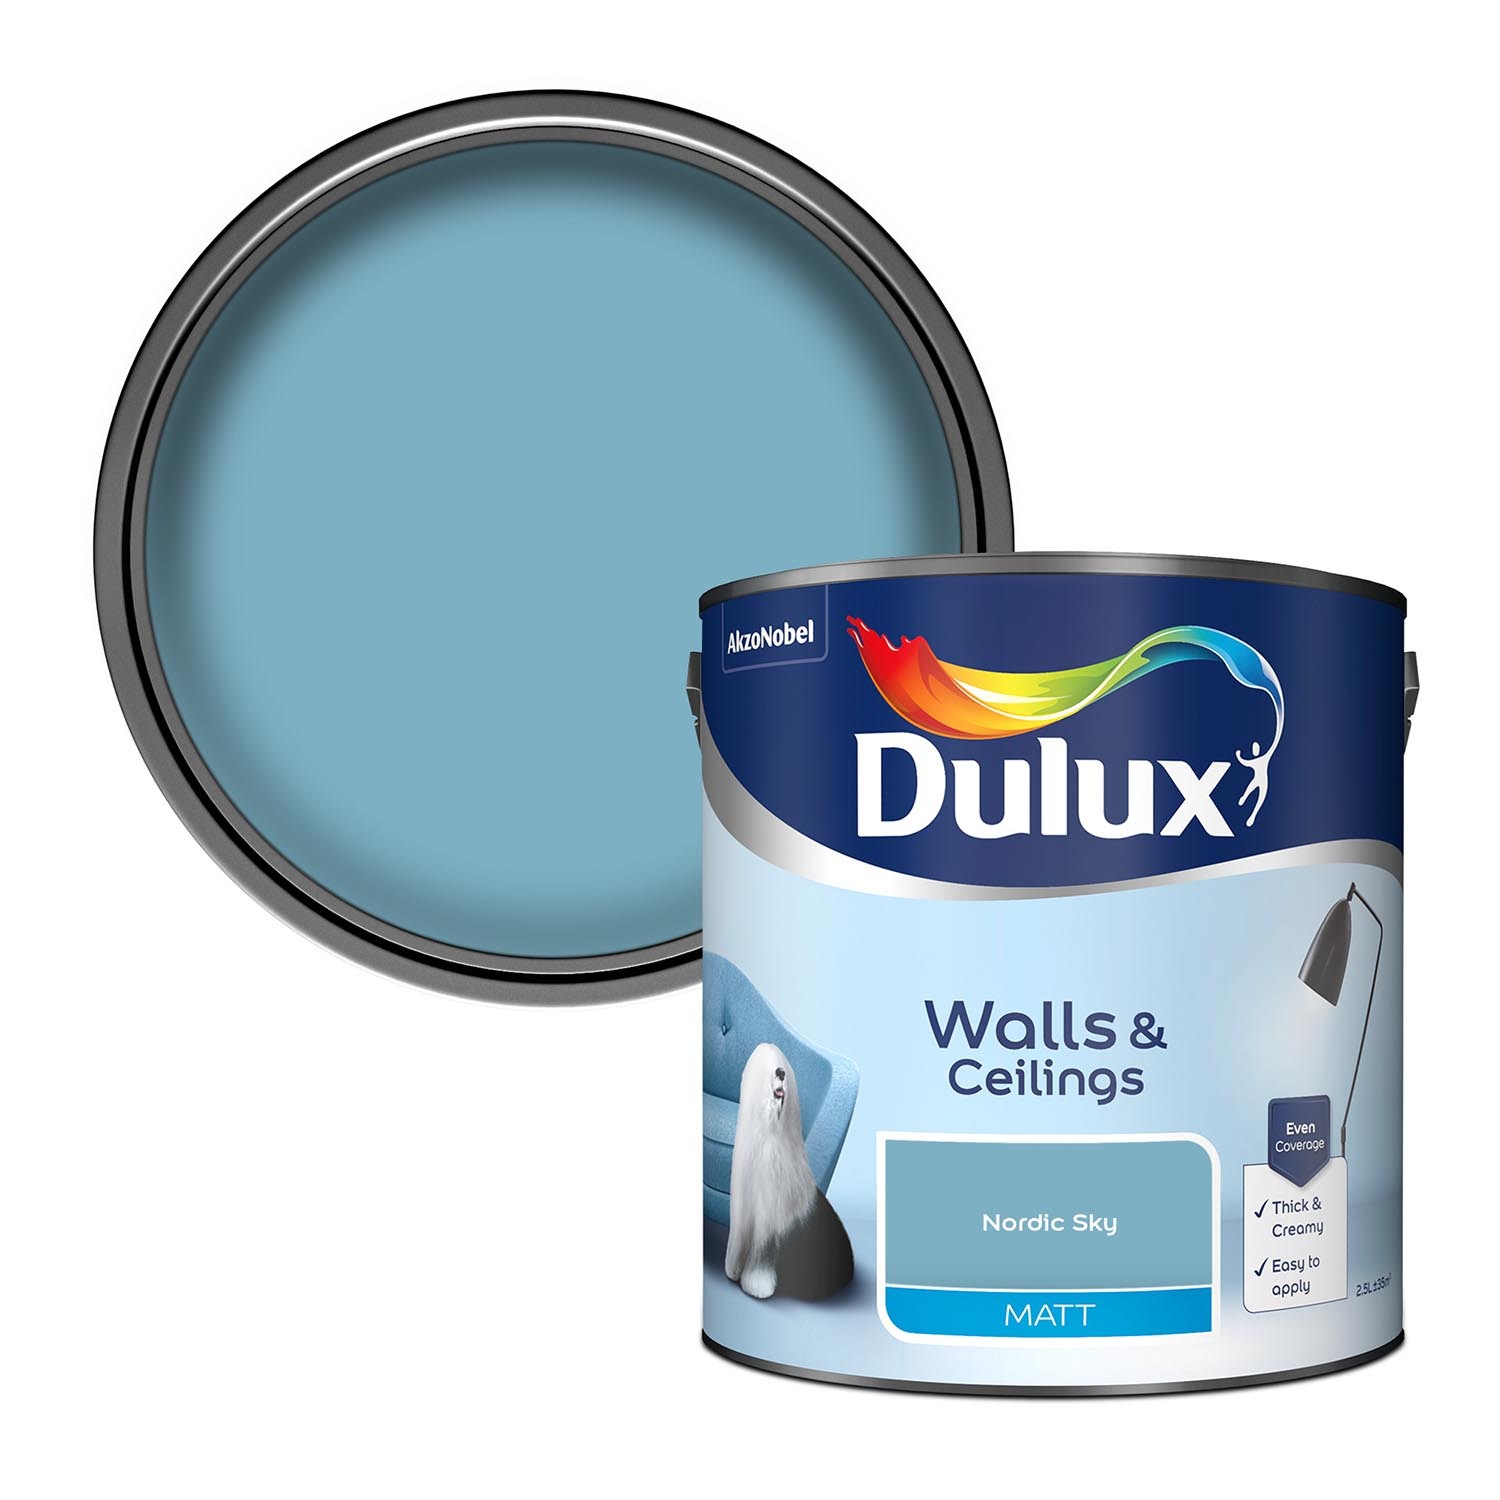 Dulux Walls & Ceilings Nordic Sky Matt Emulsion Paint 2.5L Image 1